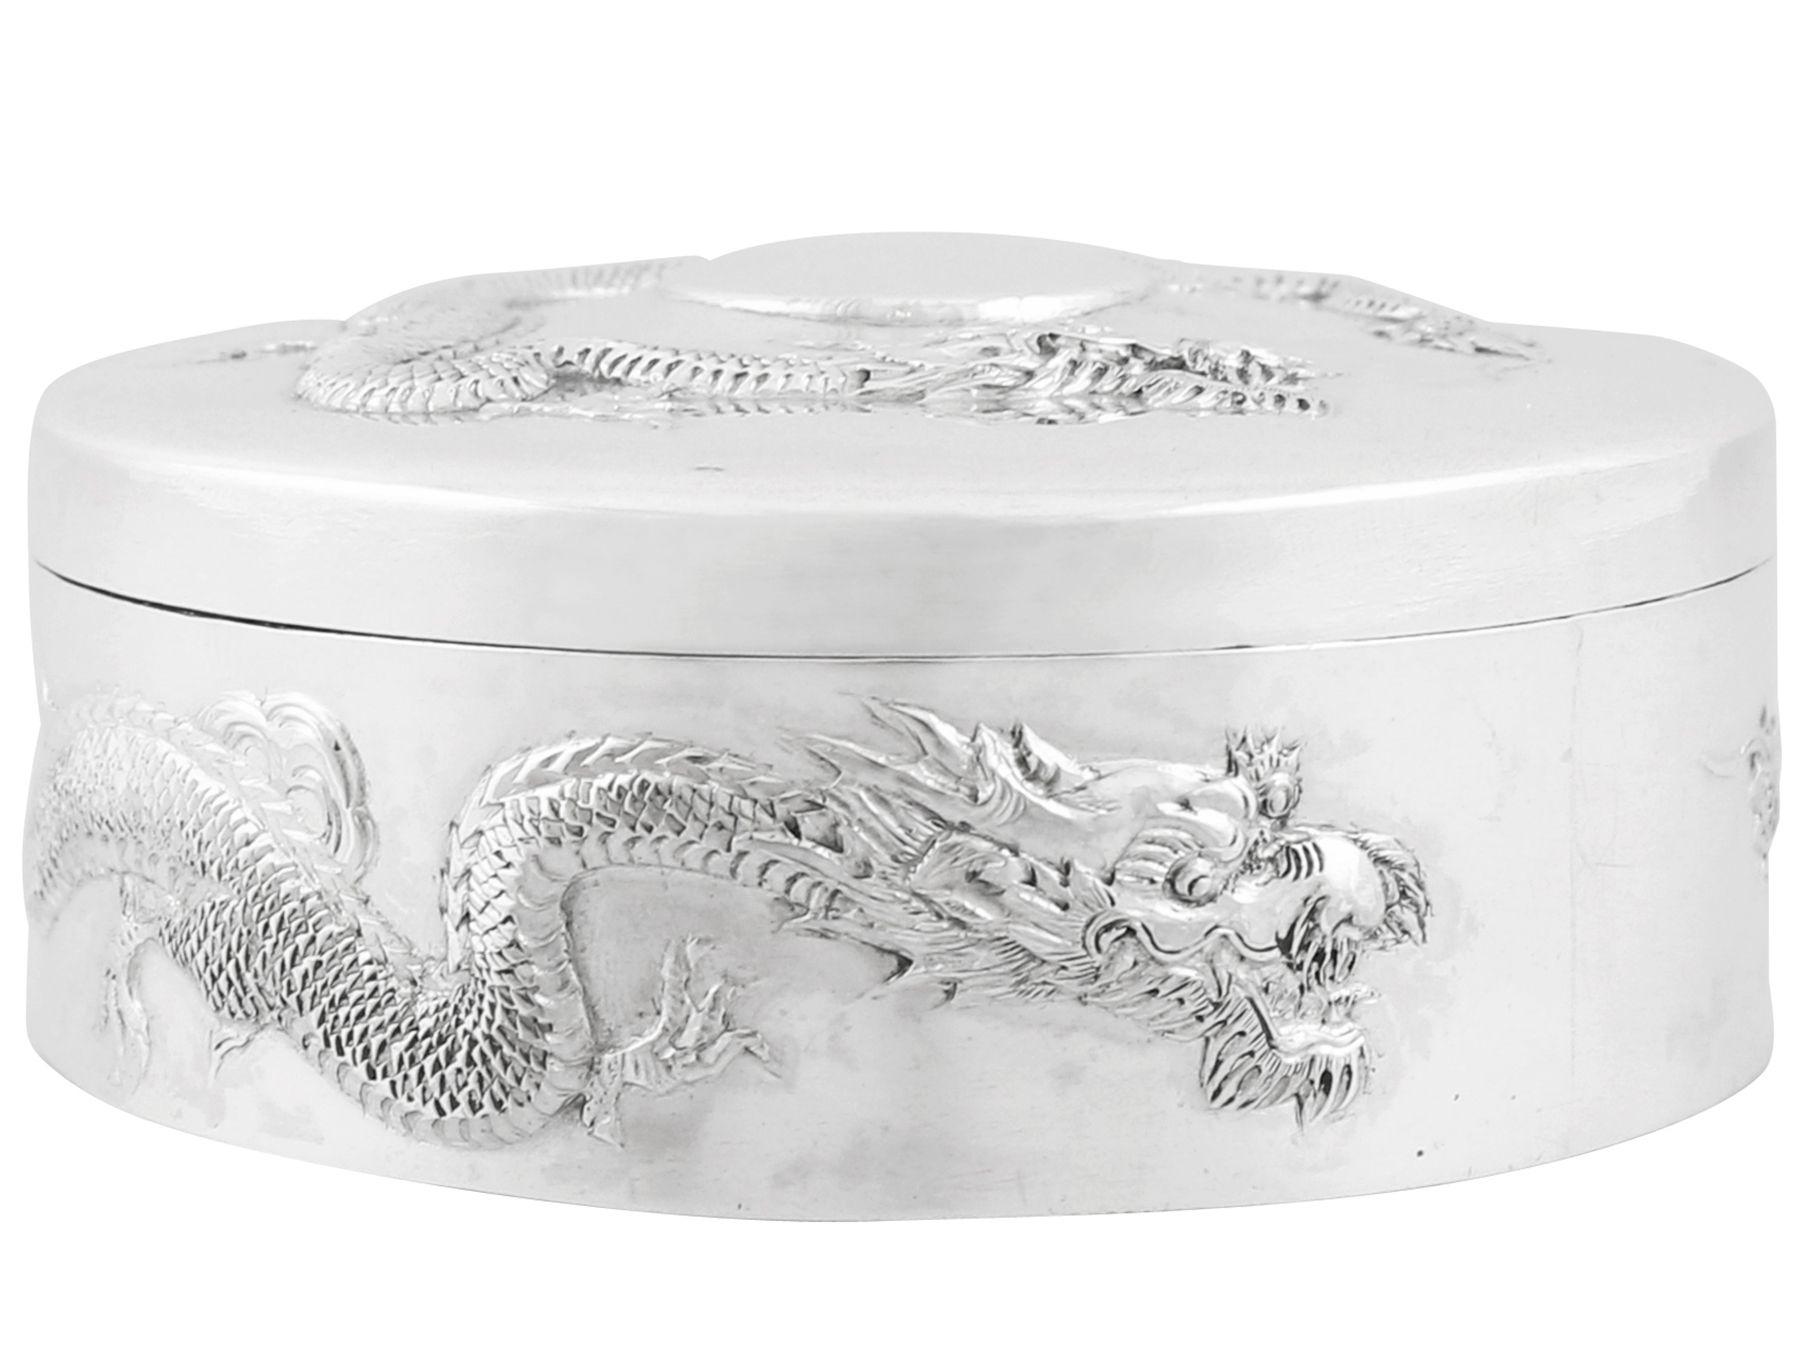 Une exceptionnelle, fine et impressionnante boîte à dragon en argent d'exportation chinoise antique ; un ajout à notre collection de boîtes et de coffrets.

Cette boîte ancienne en argent d'exportation chinois (CES) a une forme cylindrique.

La